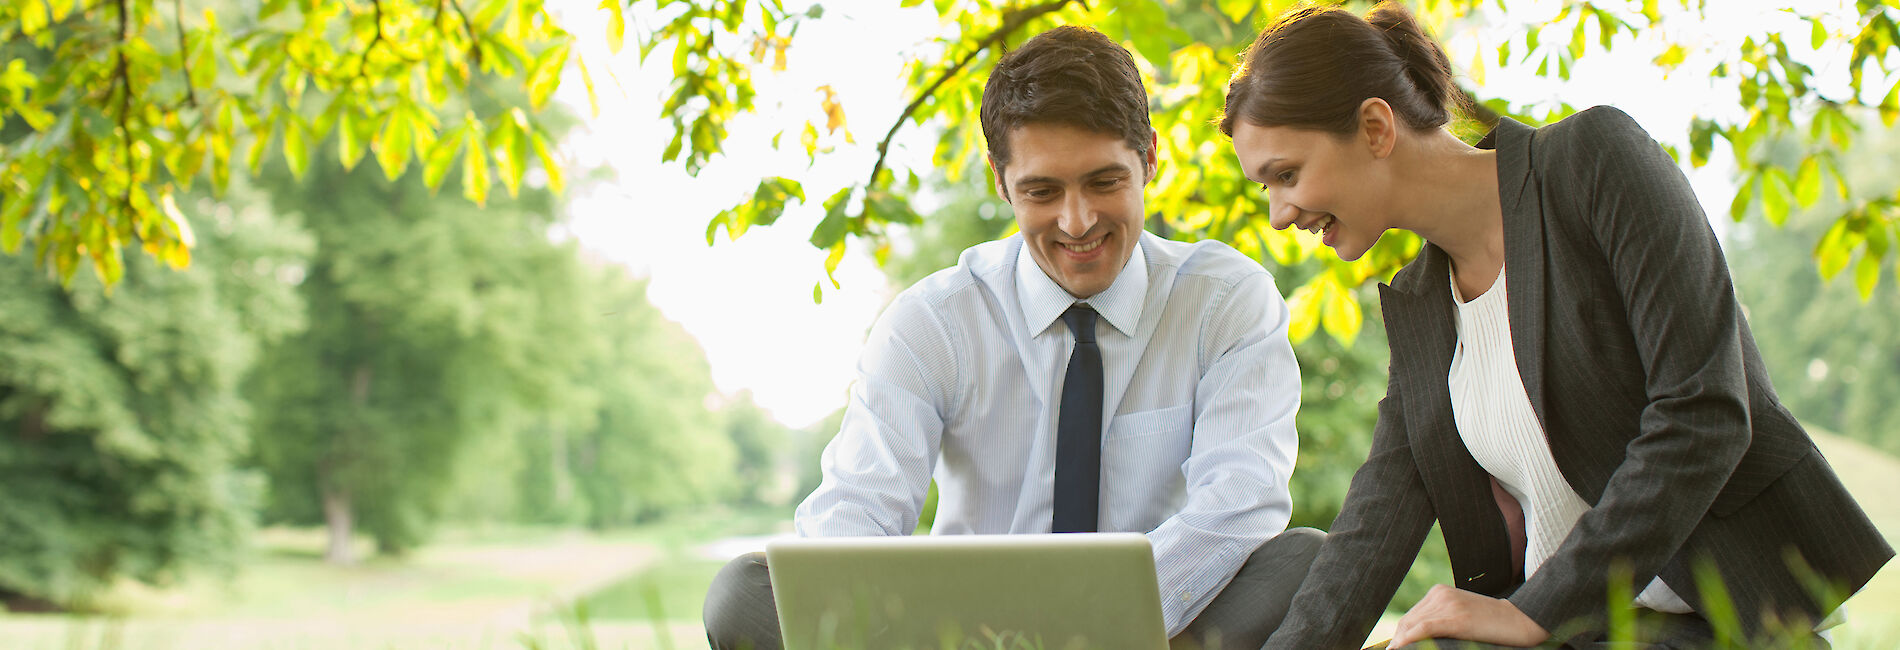 Mann und Frau in Business Outfits sitzen mit einem Laptop auf einer Wiese.